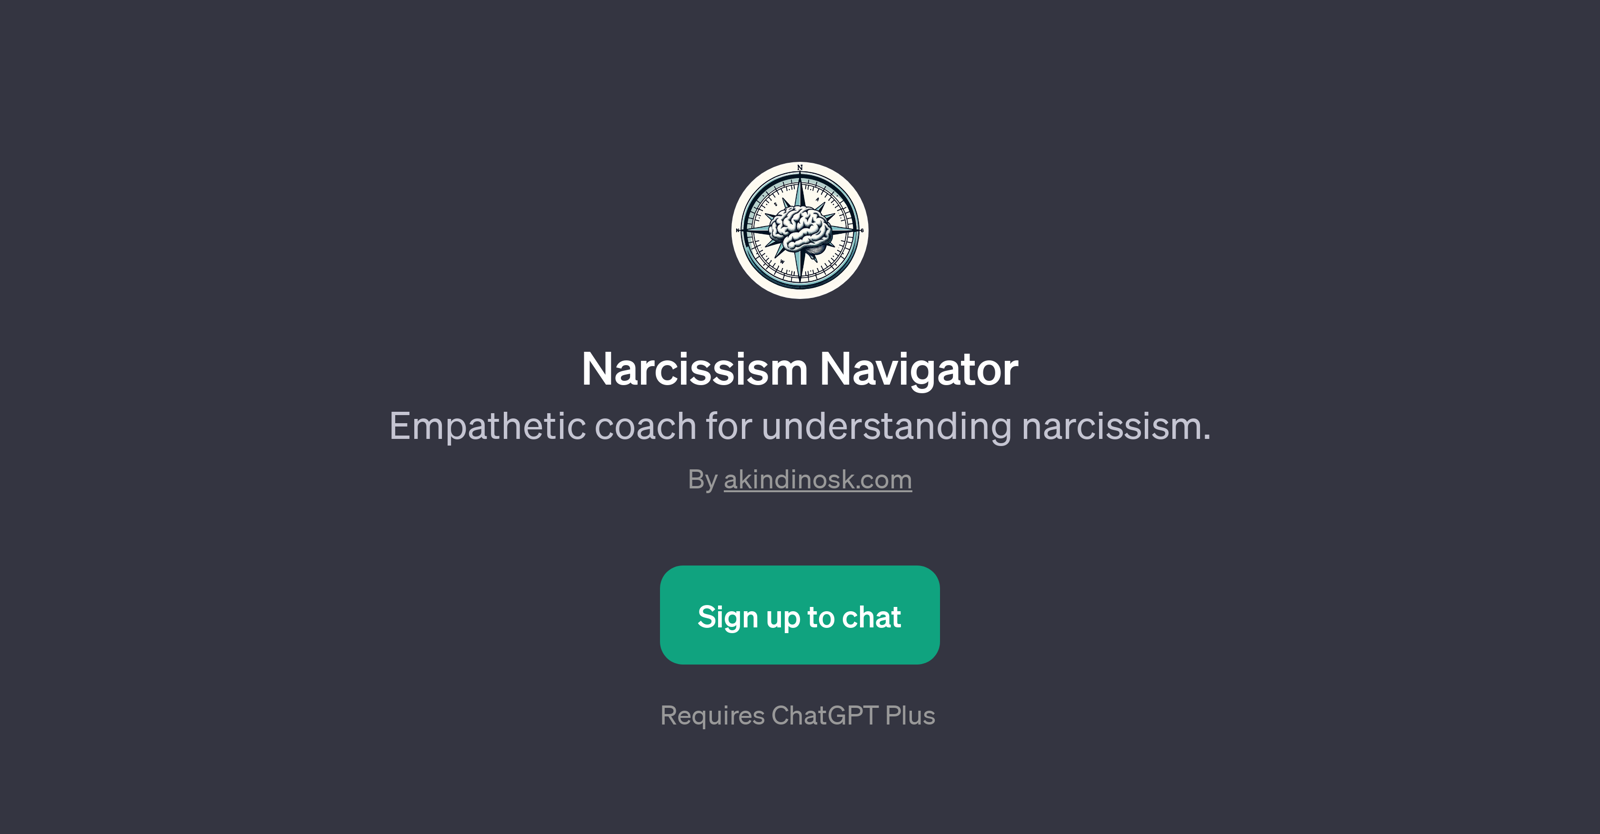 Narcissism Navigator website